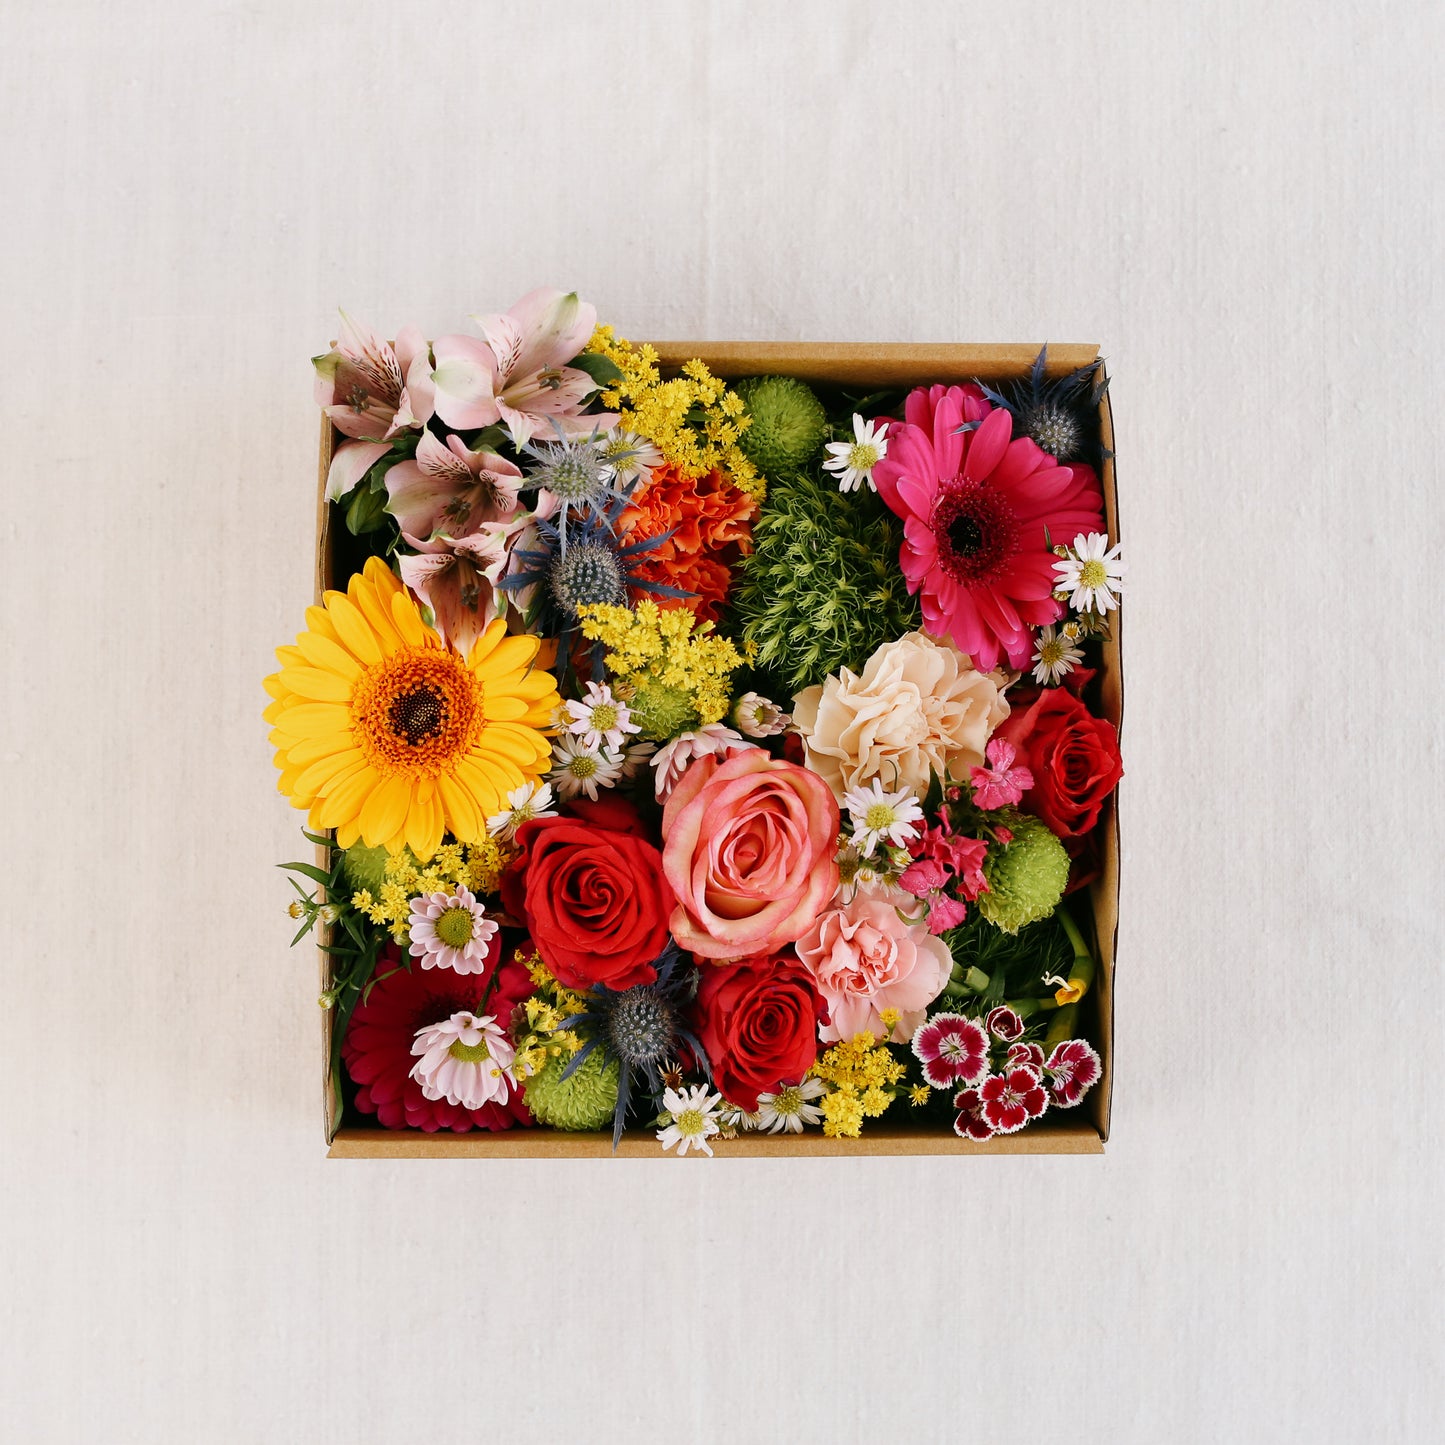 Gemischte bunte Blumen in der Box, naturfarben, Draufsich